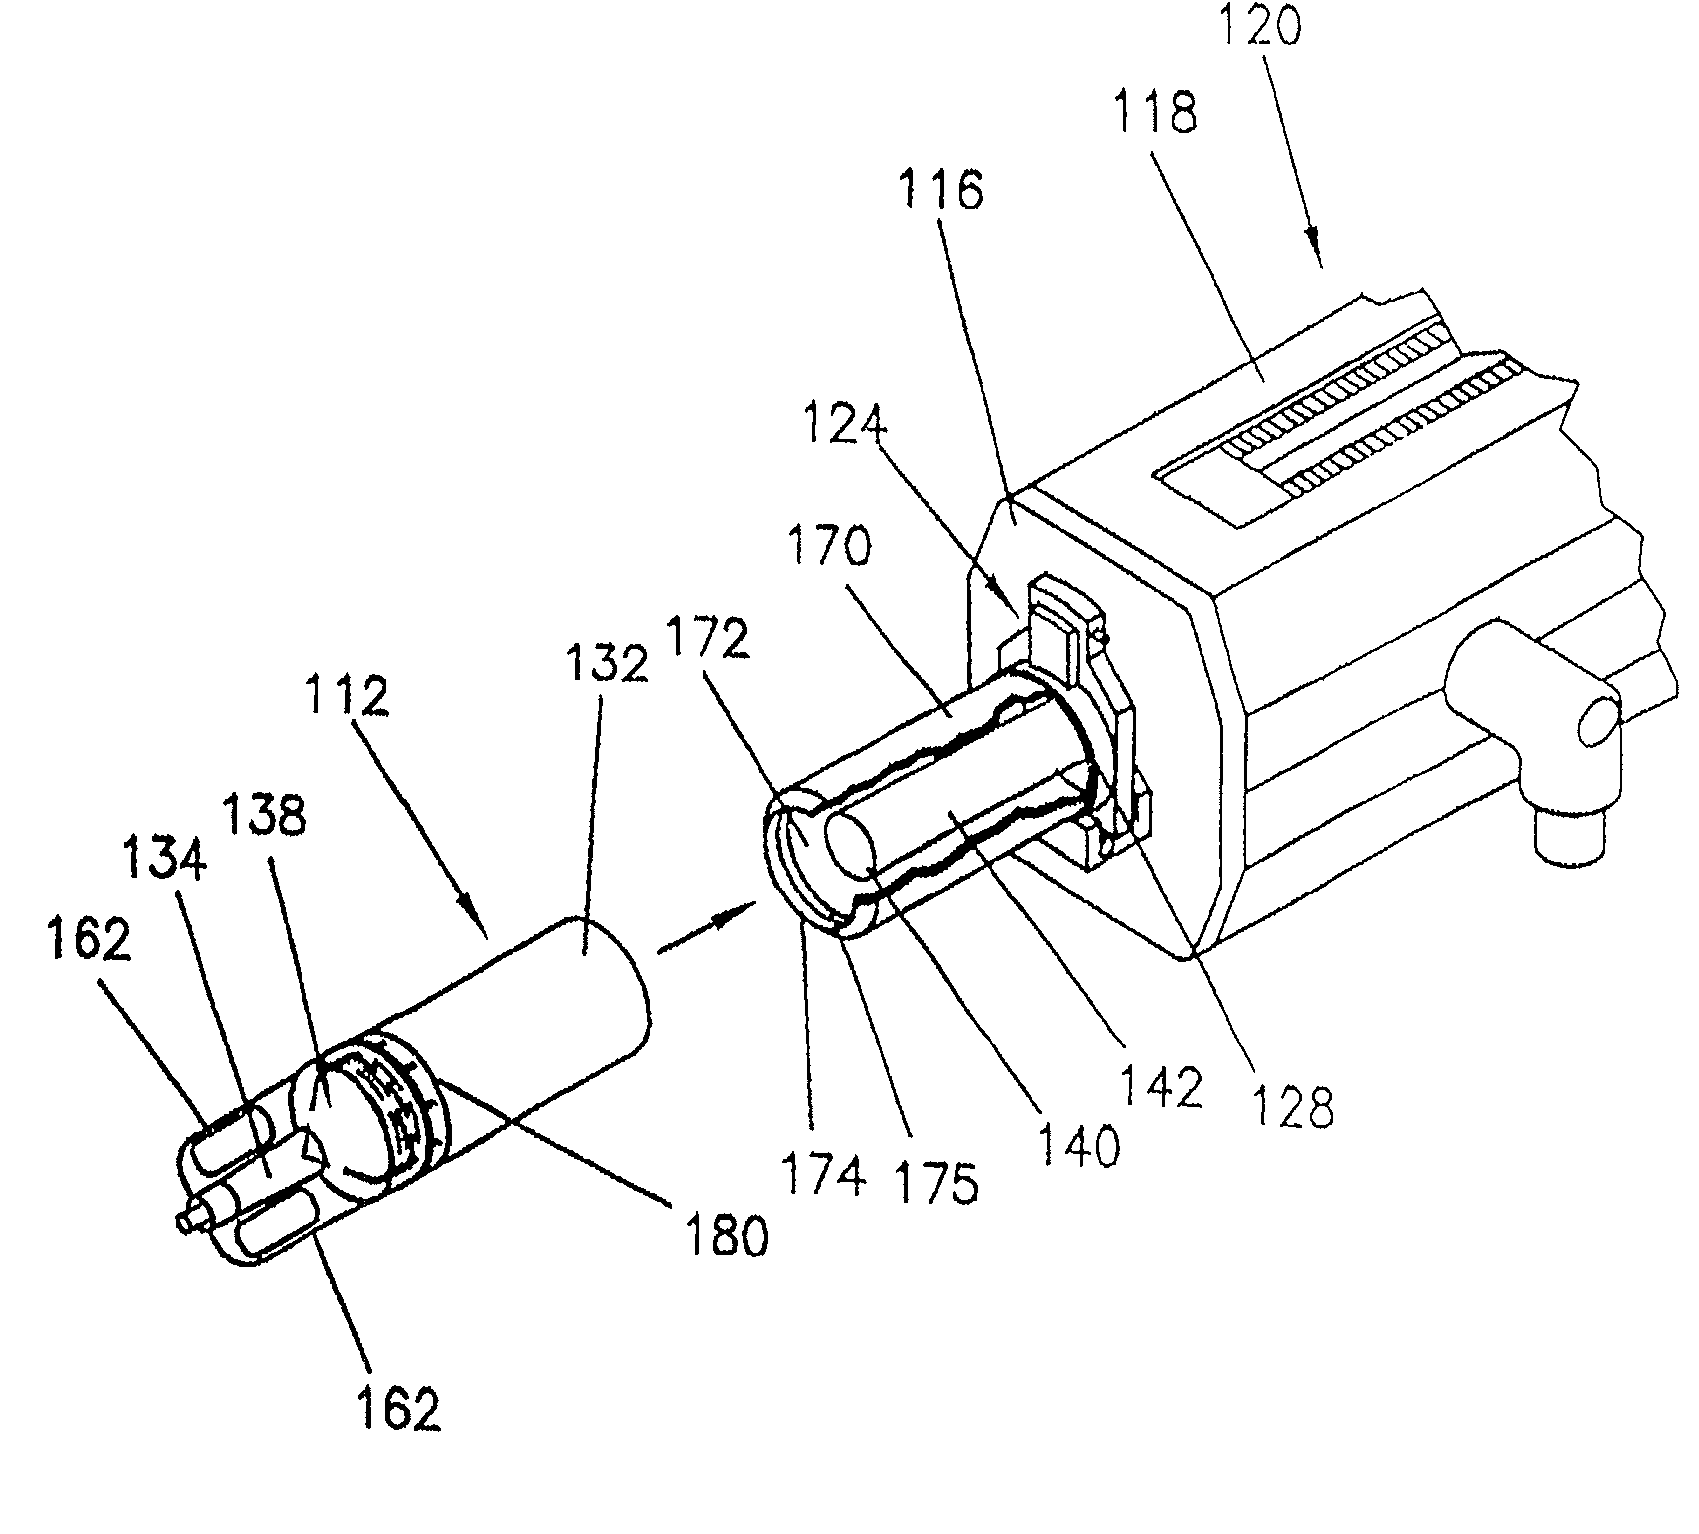 Syringe plunger sensing mechanism for a medical injector